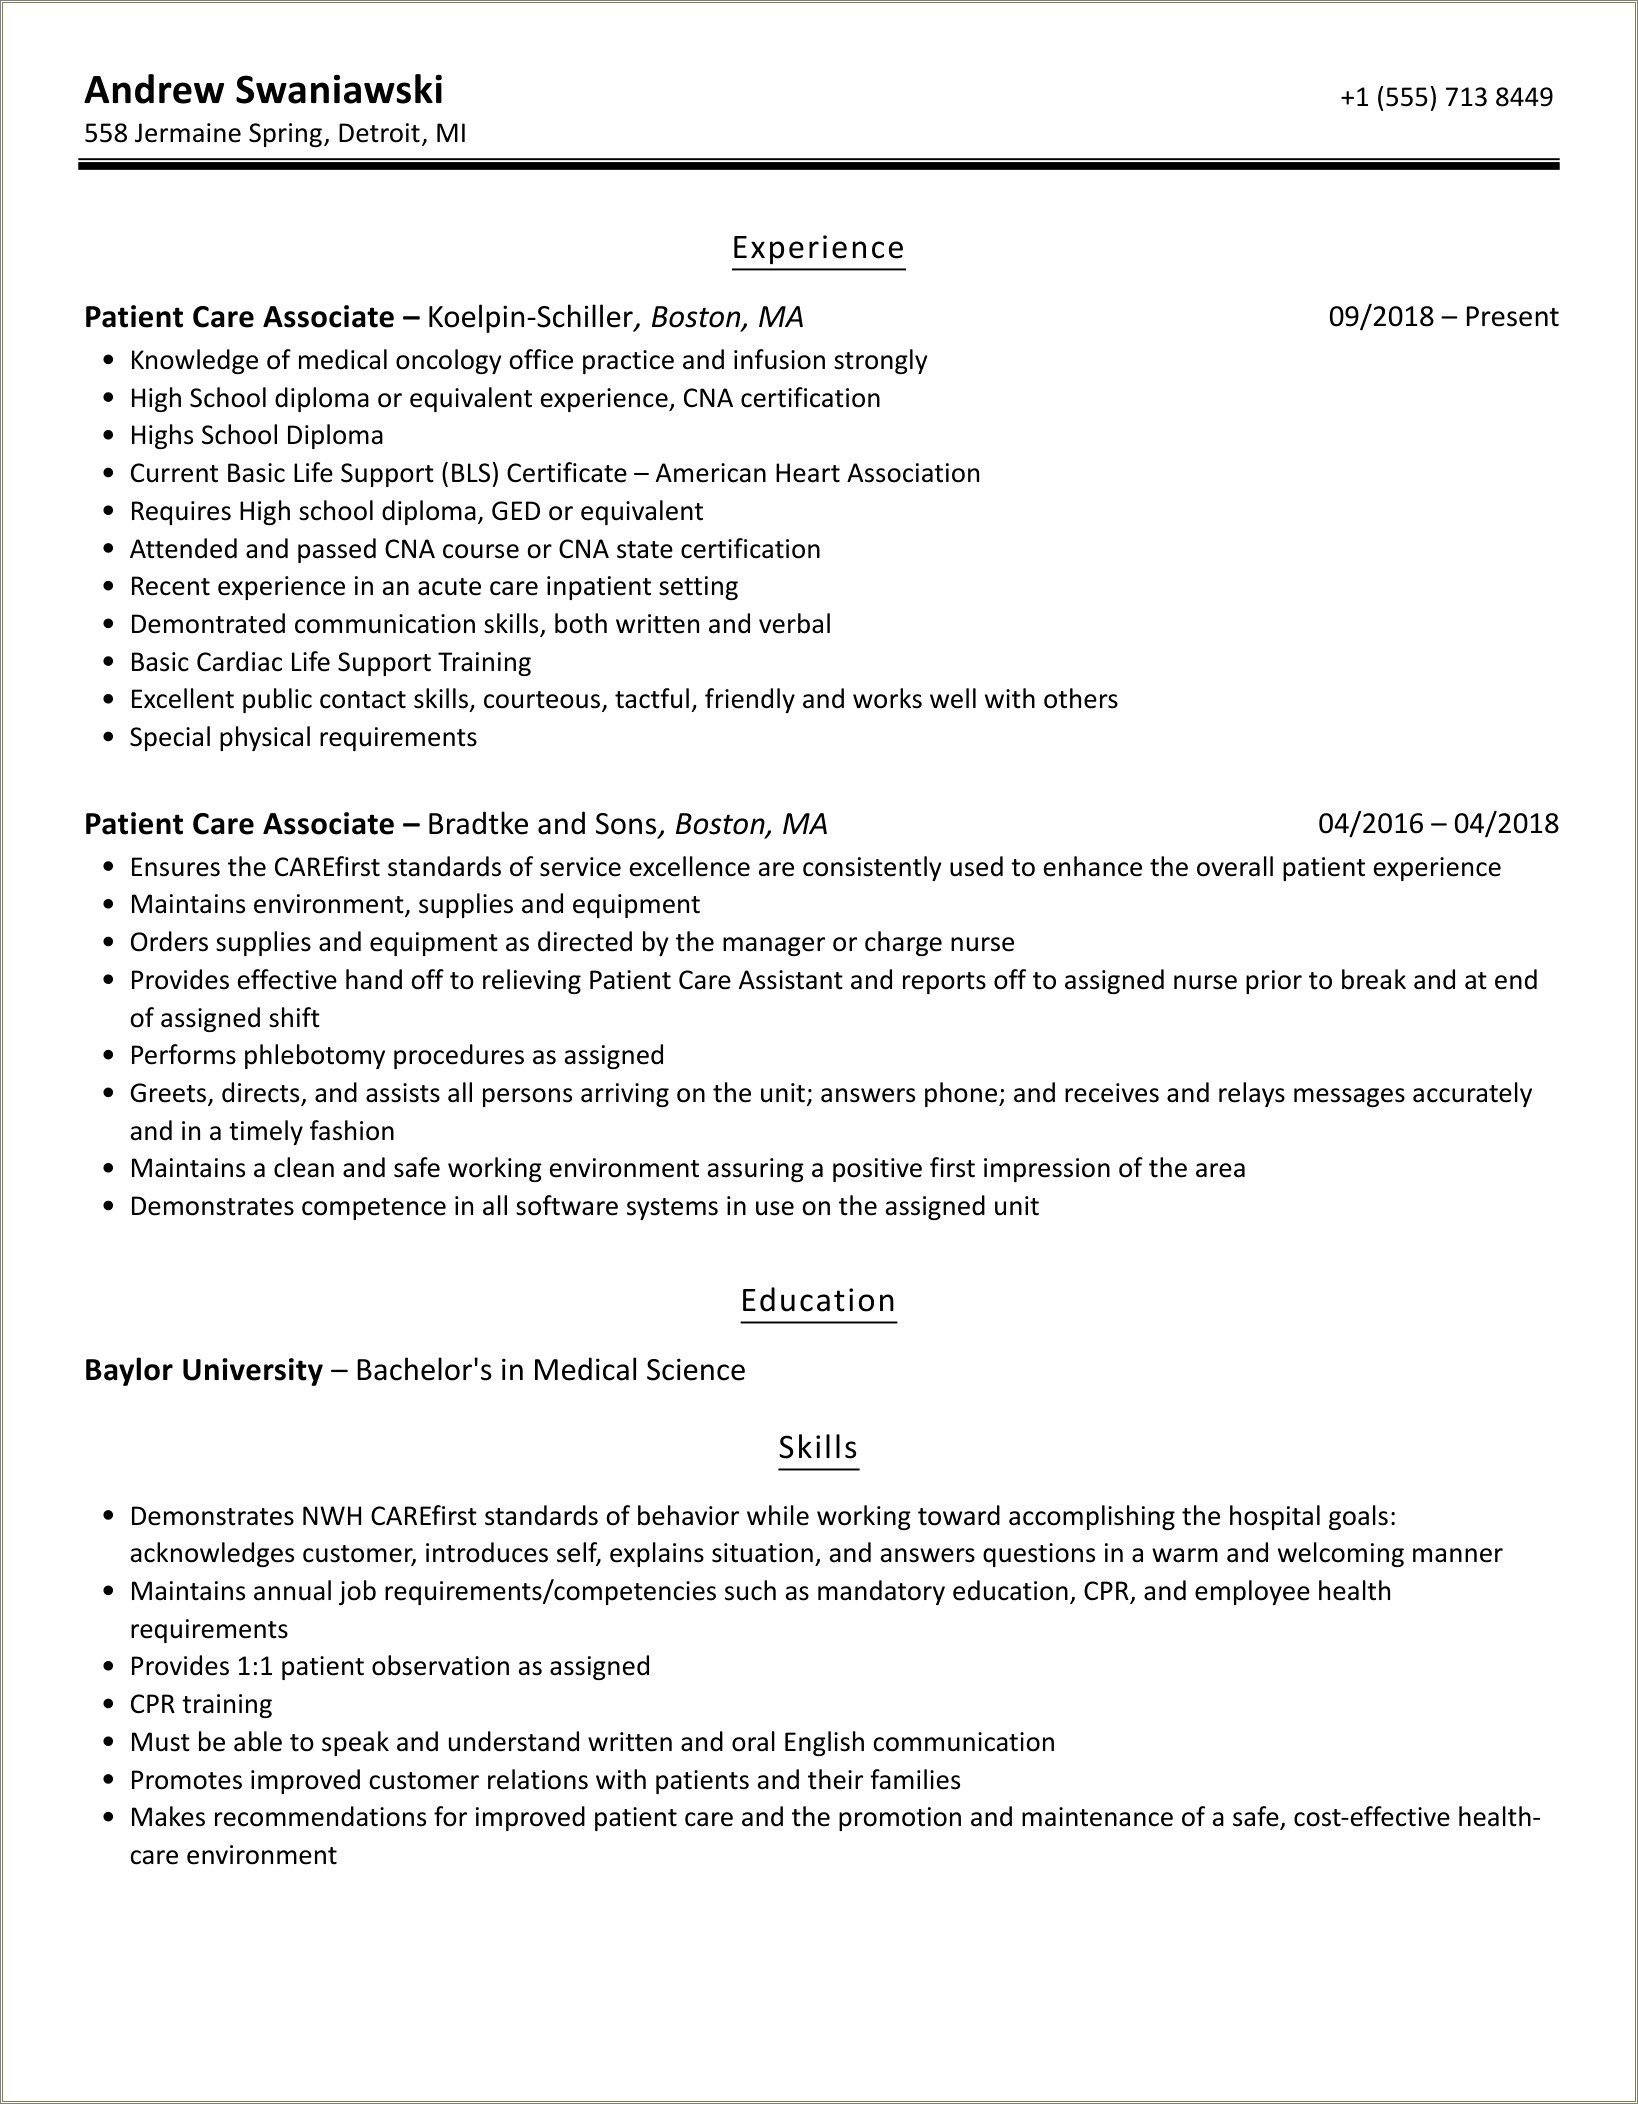 Patient Care Associate Job Description For Resume